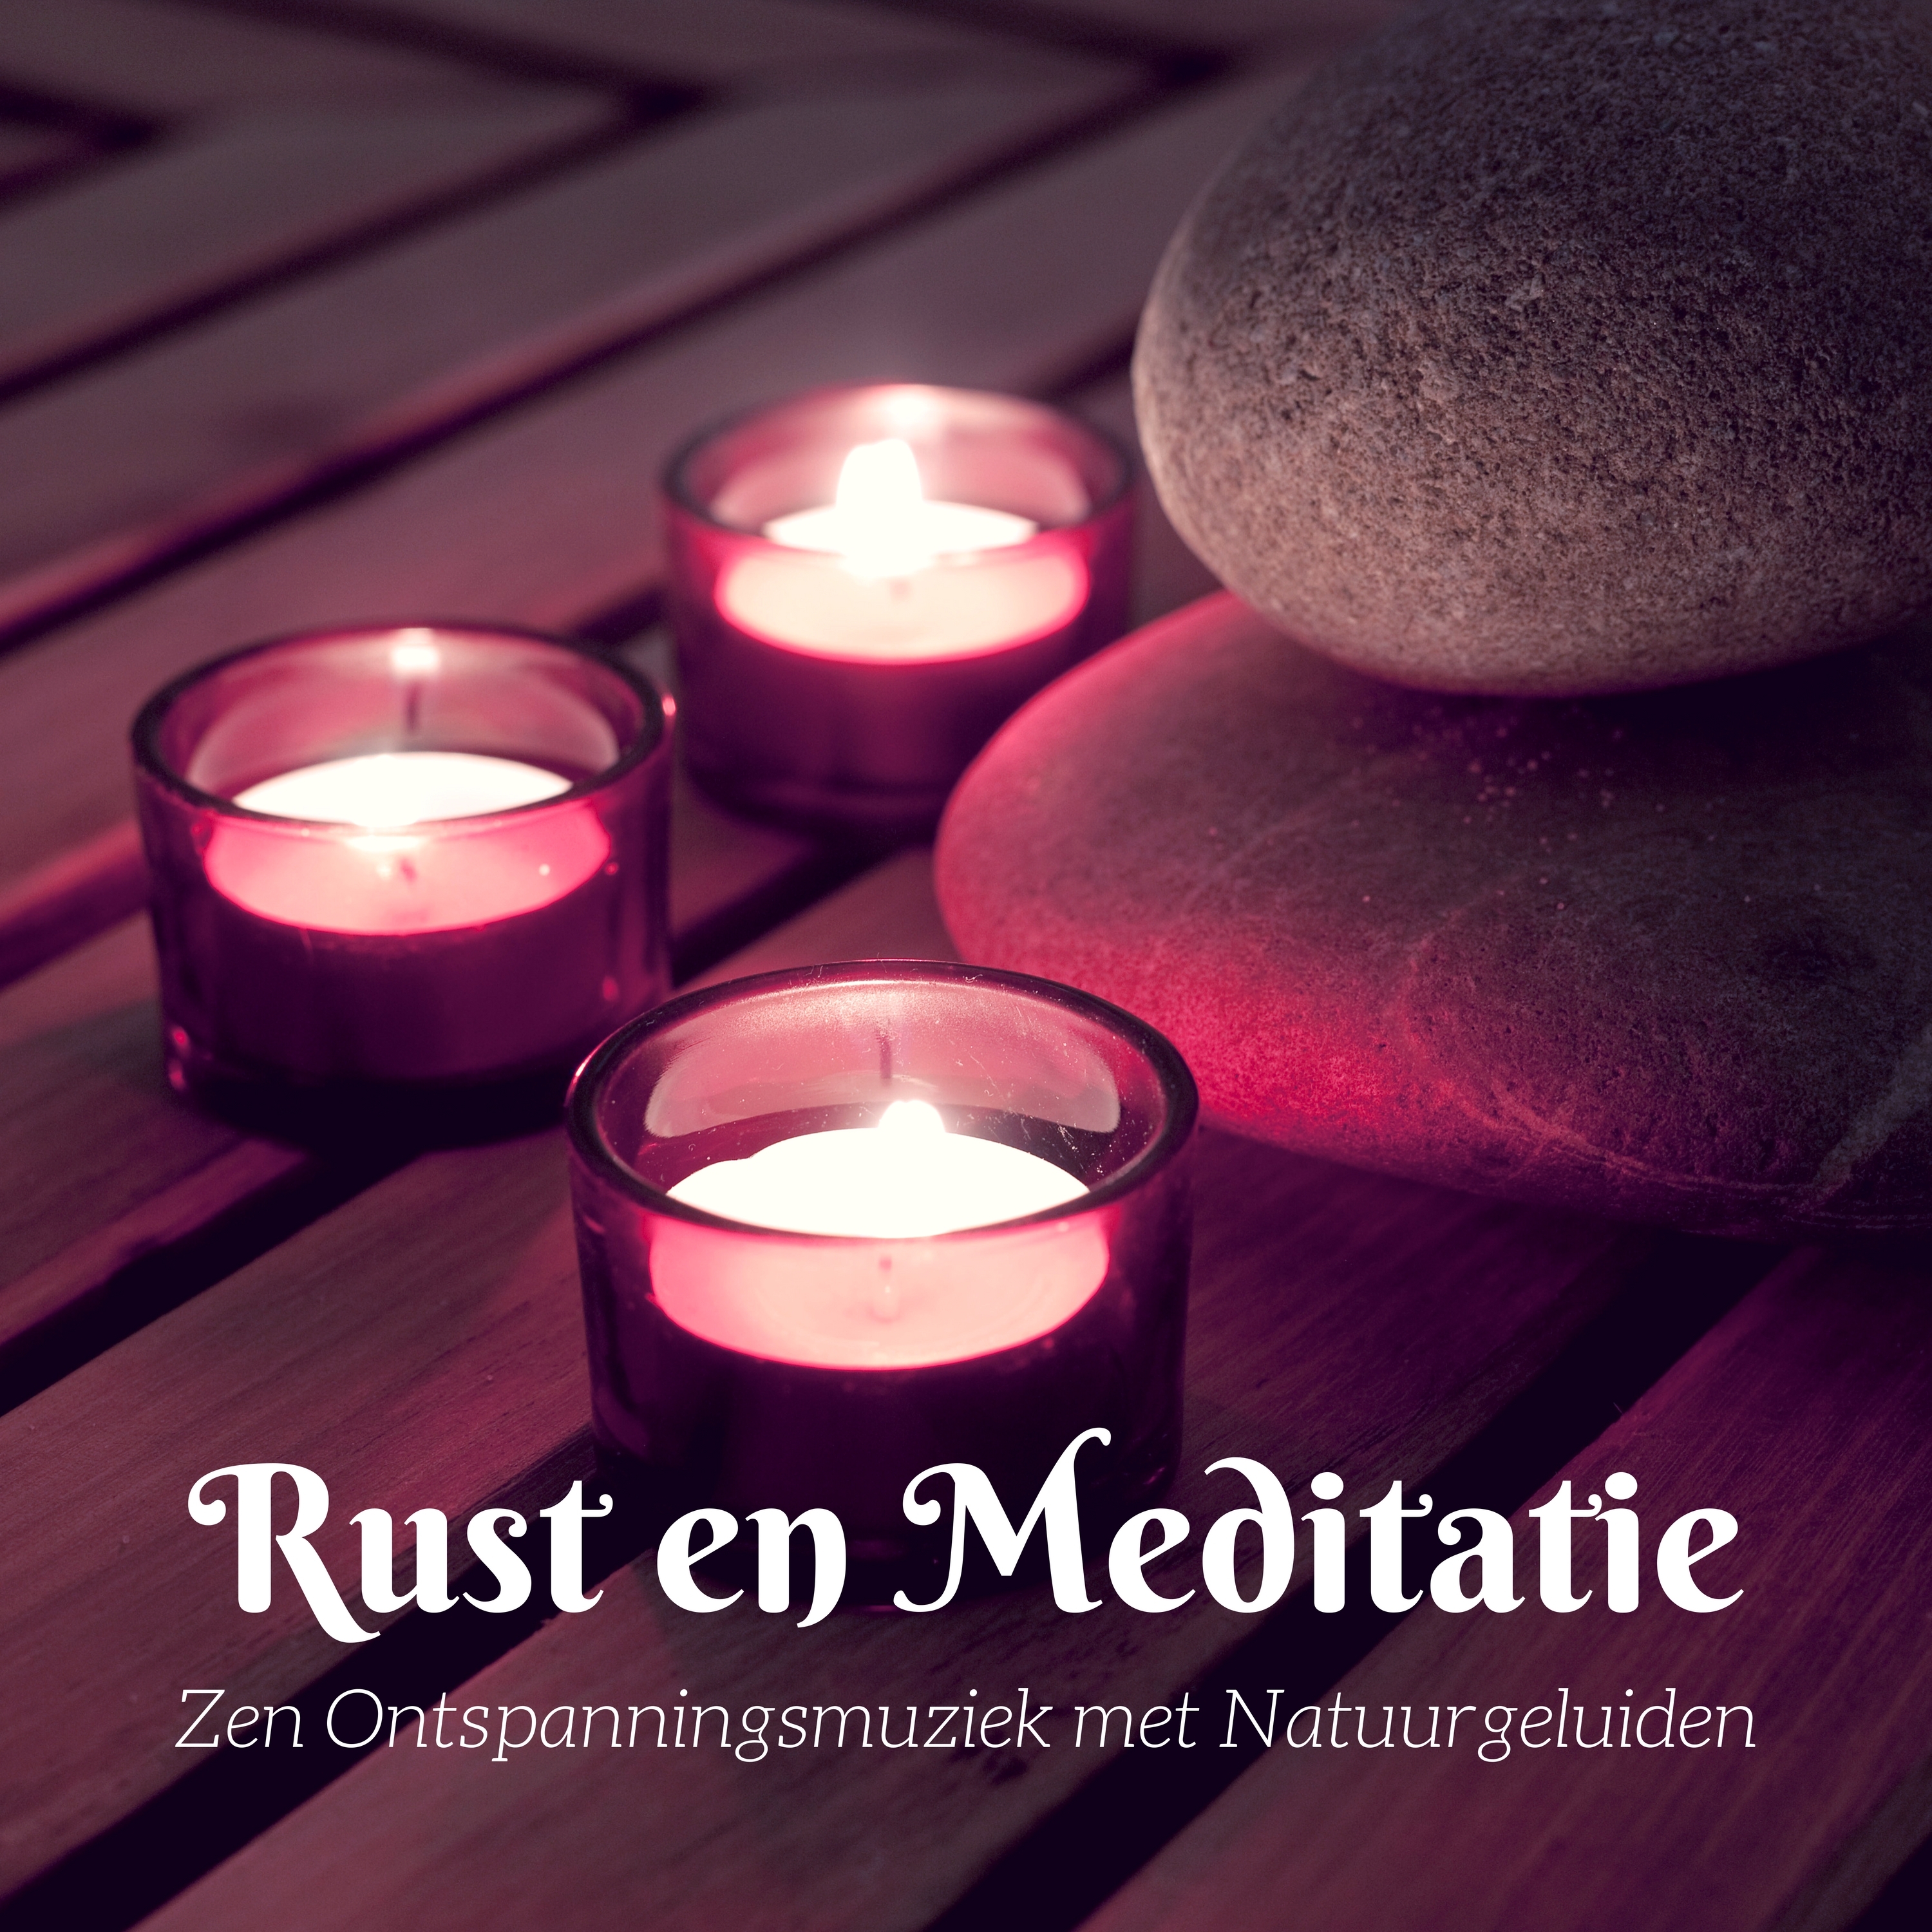 Rust en Meditatie - Zen Ontspanningsmuziek met Natuurgeluiden